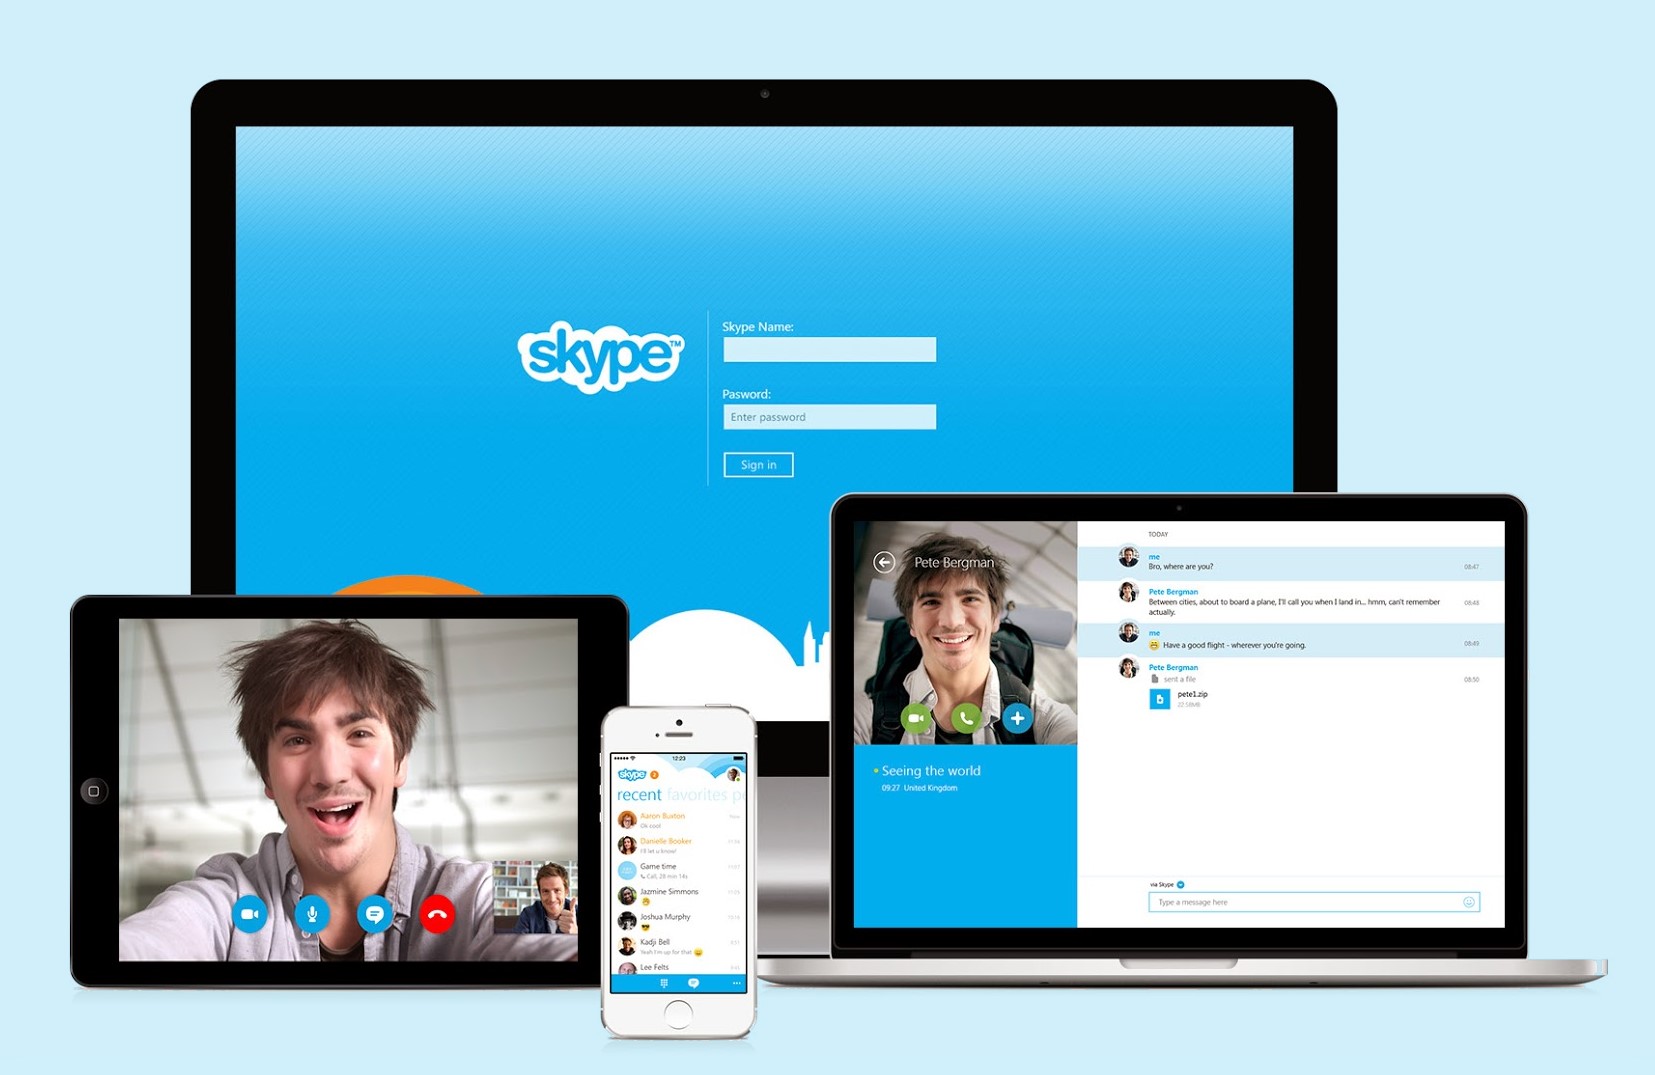 Видеочат Skype